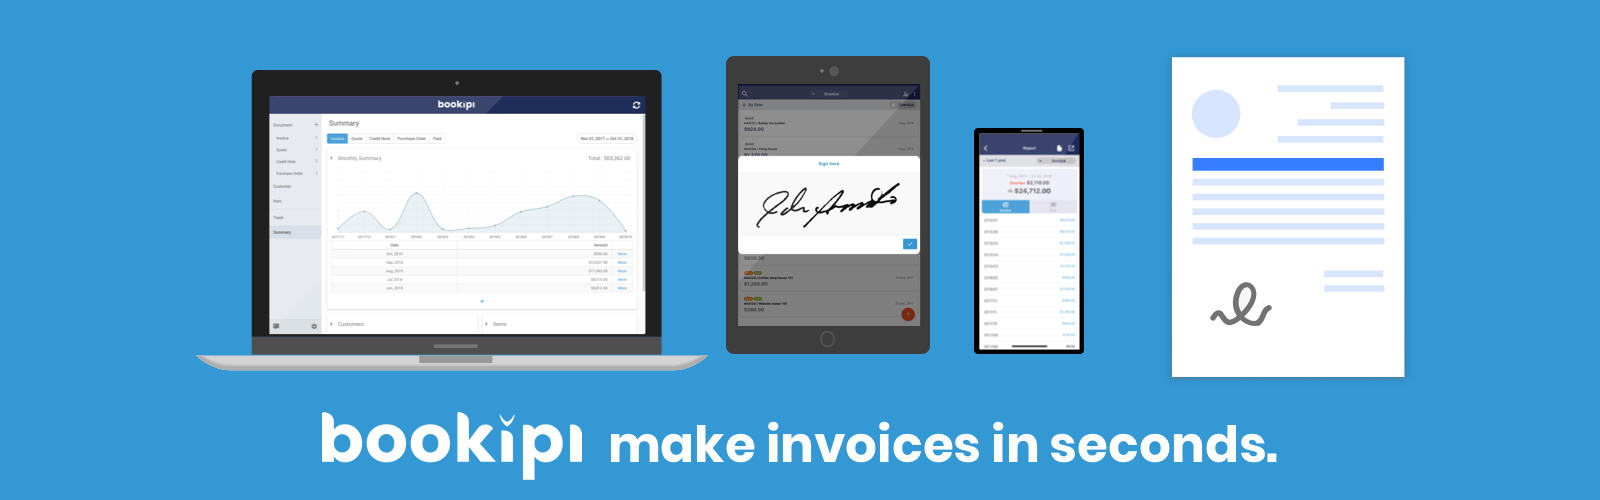 App Spotlight: Bookipi - Invoice Maker